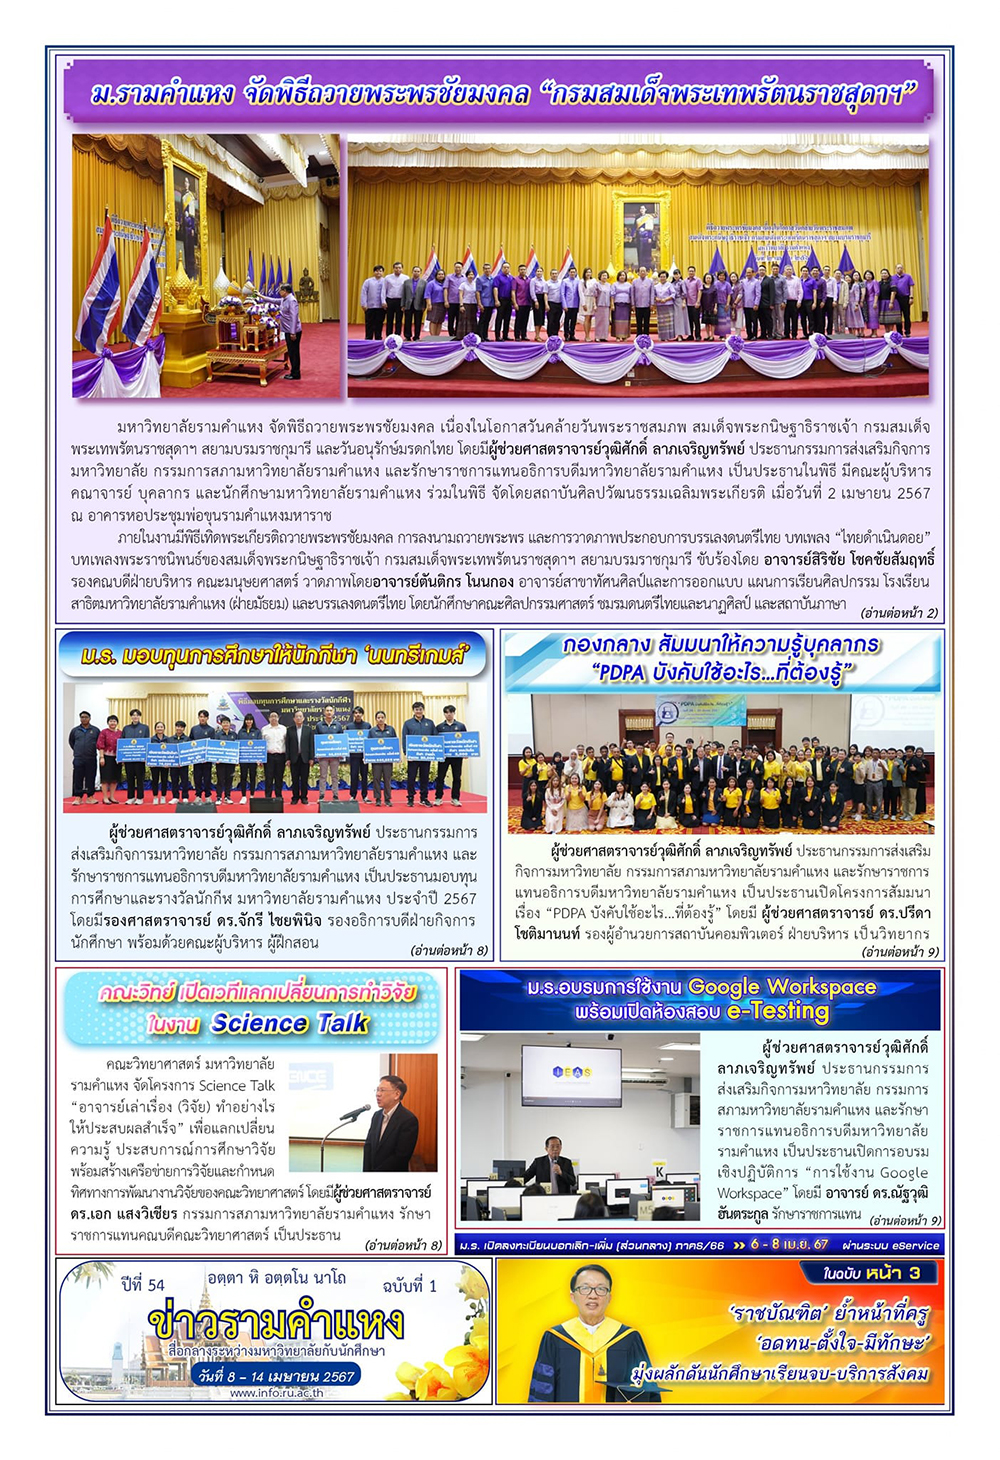 ข่าวรามคำแหง ปีที่ 54 ฉบับที่ 1 วันที่ 8-14 เมษายน 2567 / Ramkhamhaeng News. Year 54, Issue 1, 8-14 April 2024